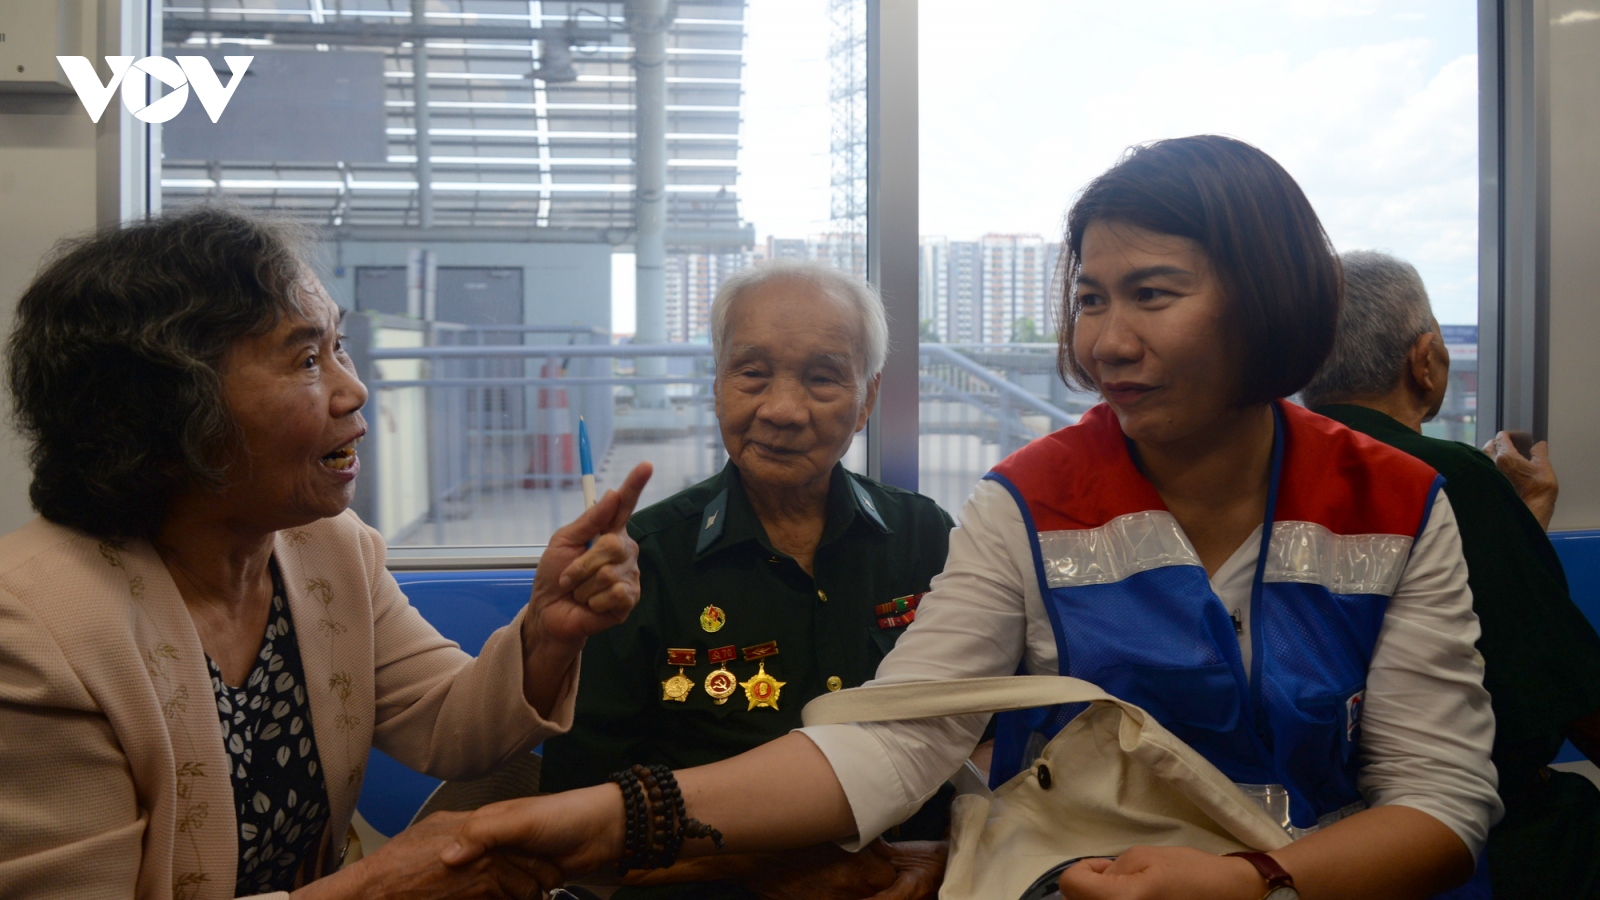 Cựu chiến sỹ Điện Biên Phủ trải nghiệm tàu metro 1 TP.HCM